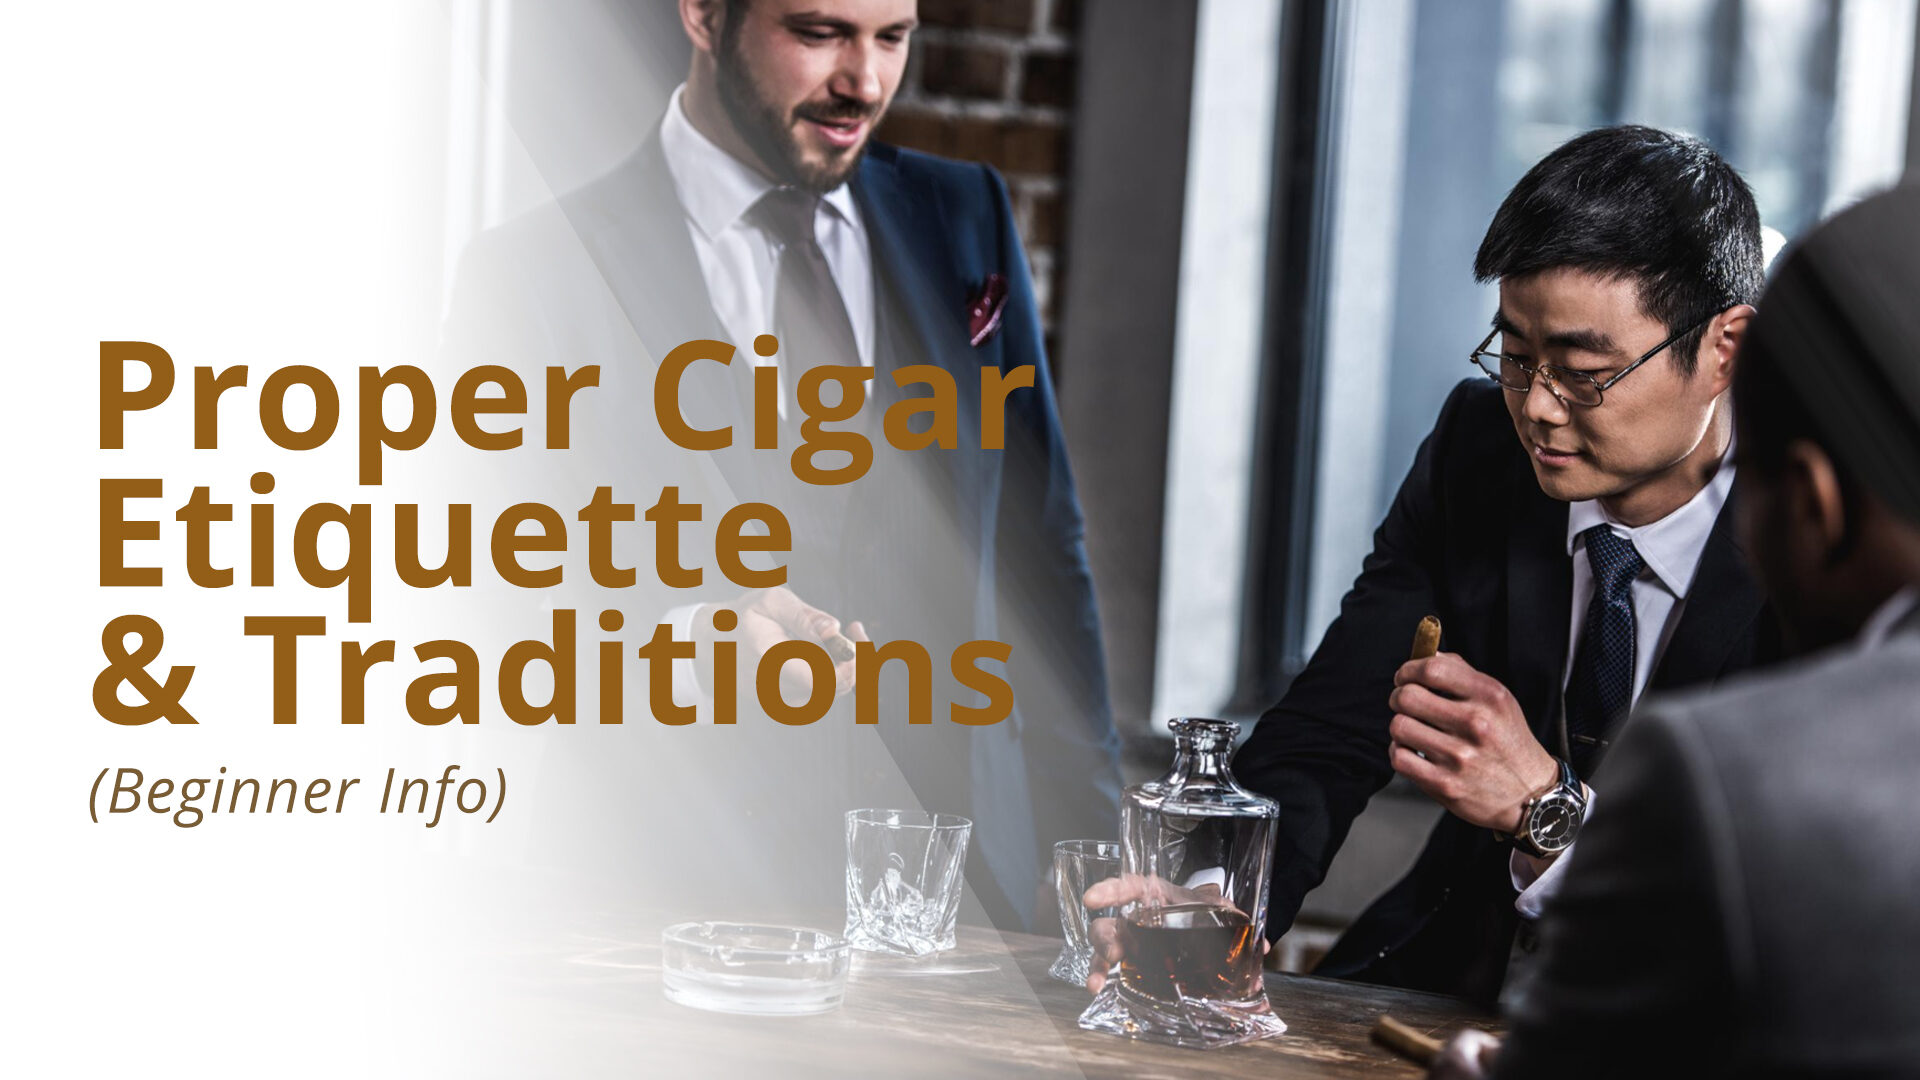 Cigar etiquette